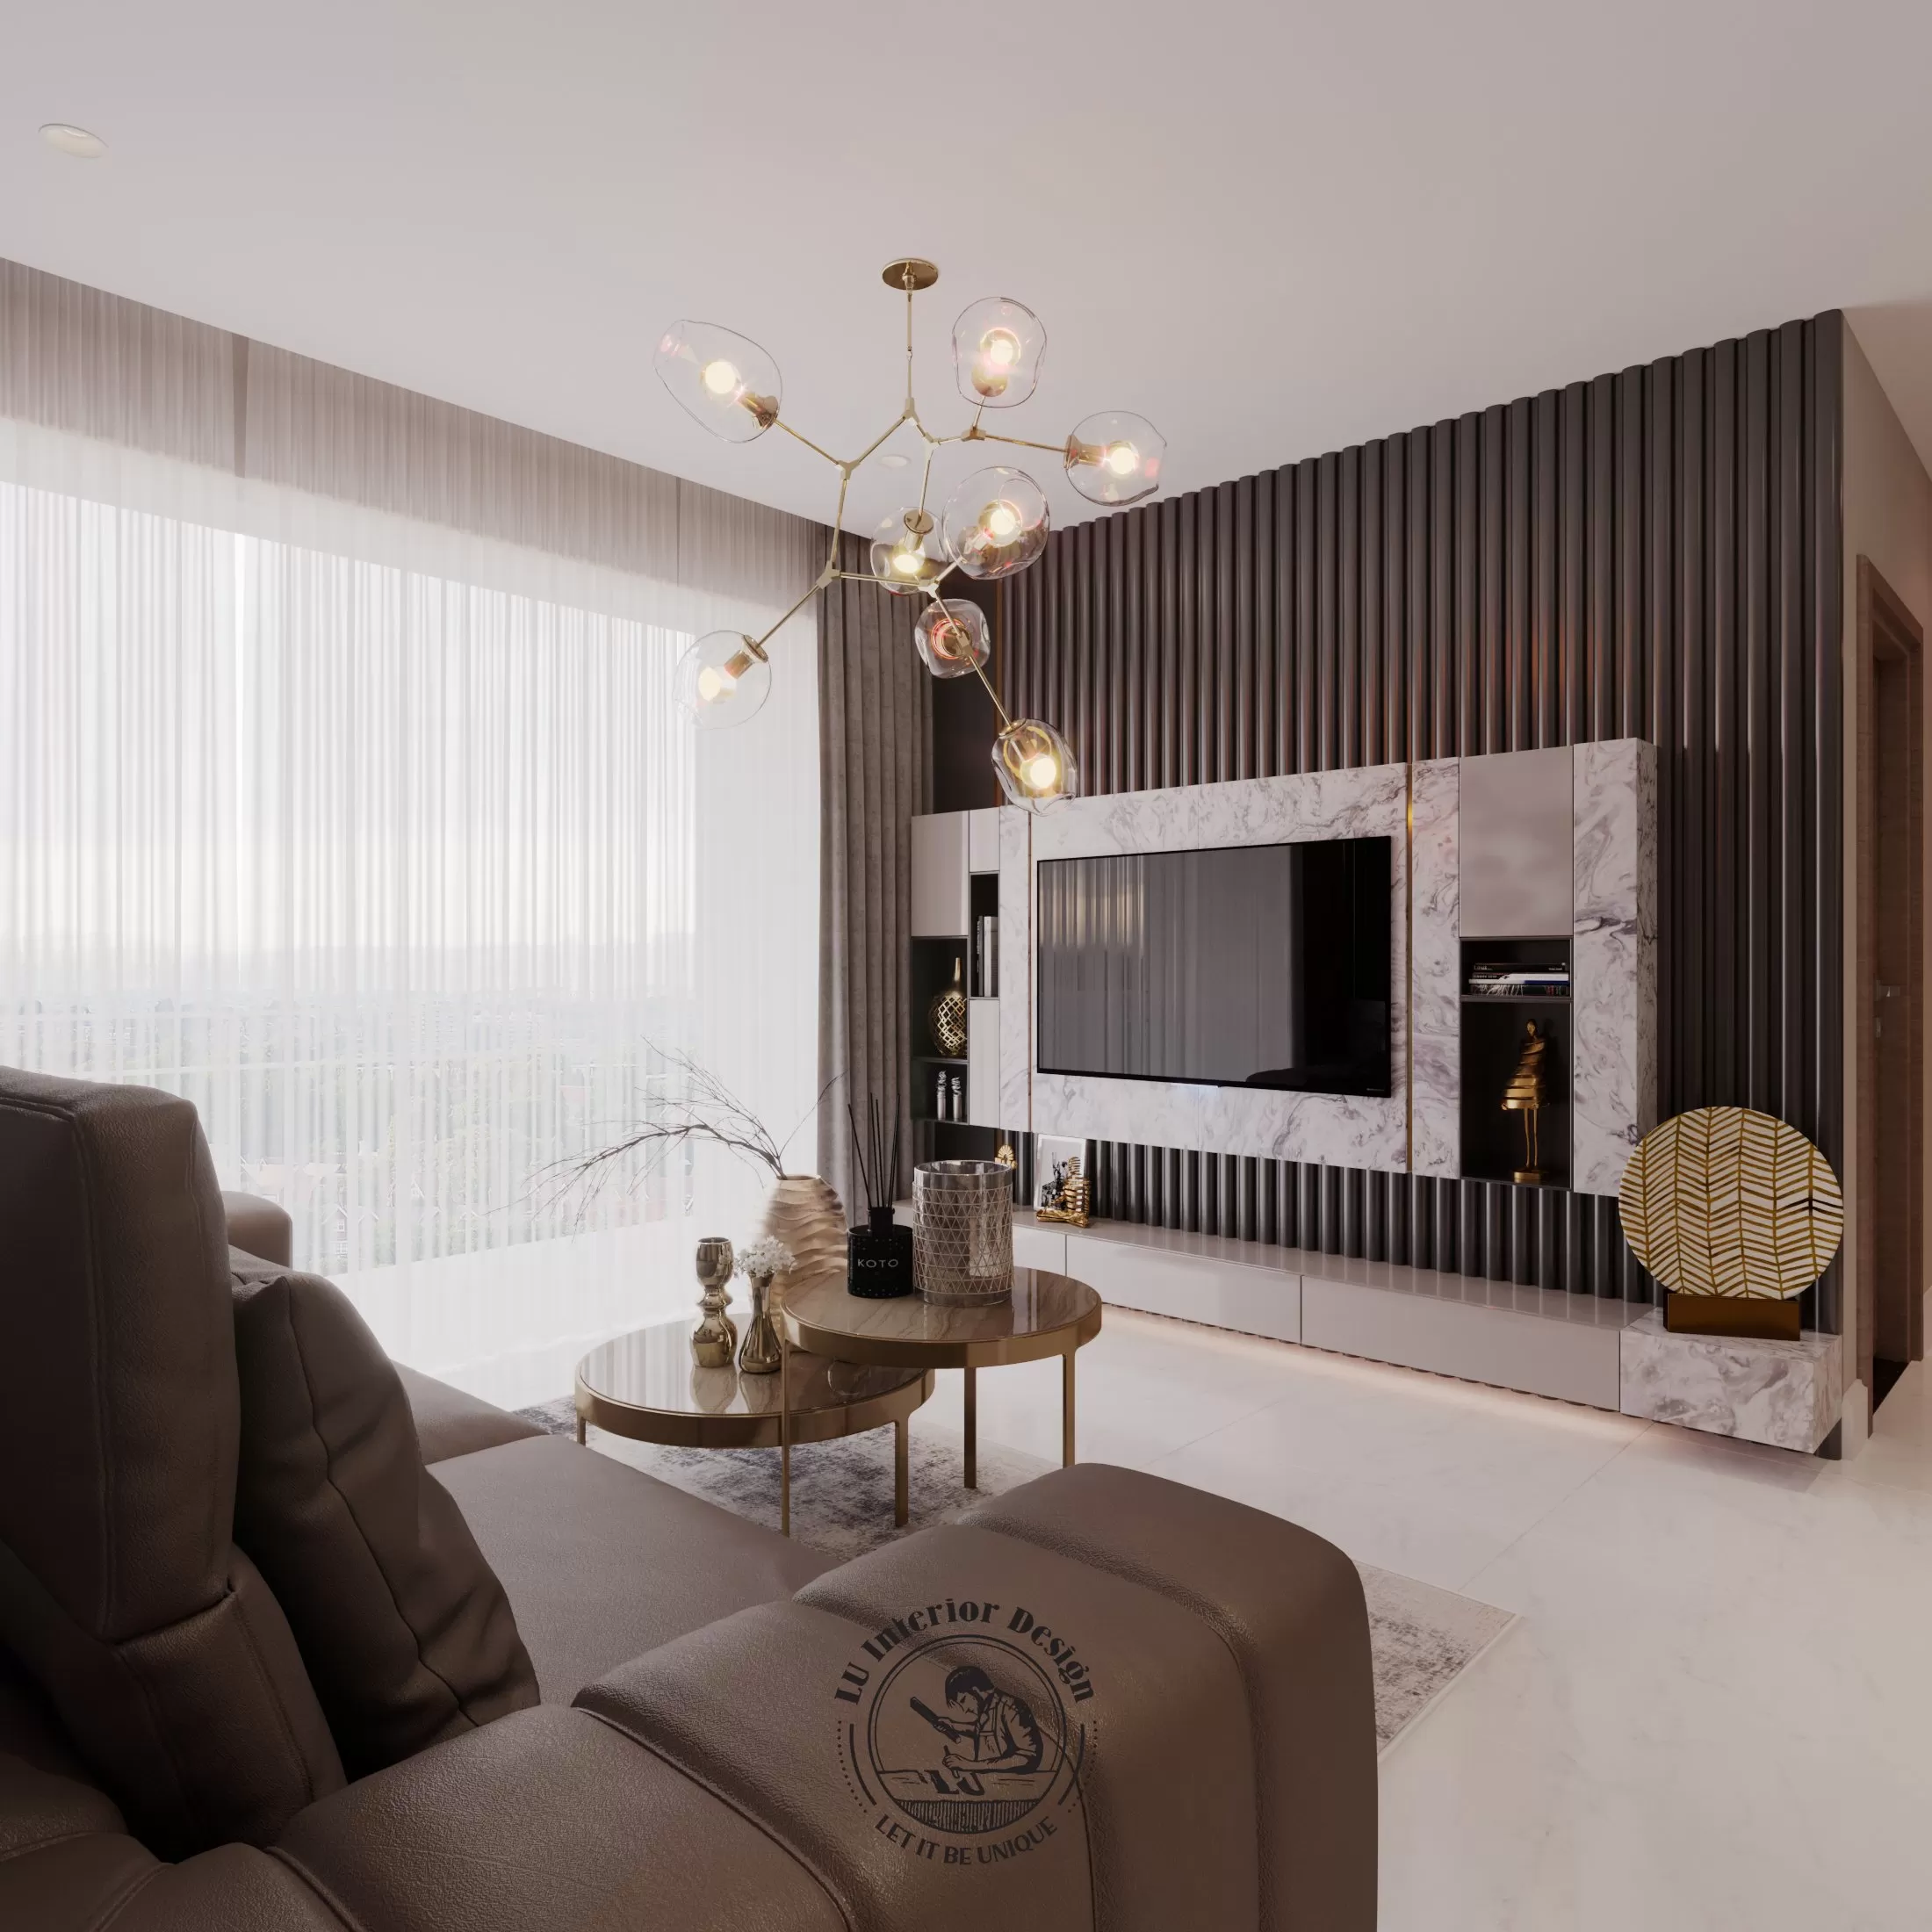 Dự án thiết kế nội thất căn hộ hiện đại Sunwah Pearl | Lu Design thực hiện